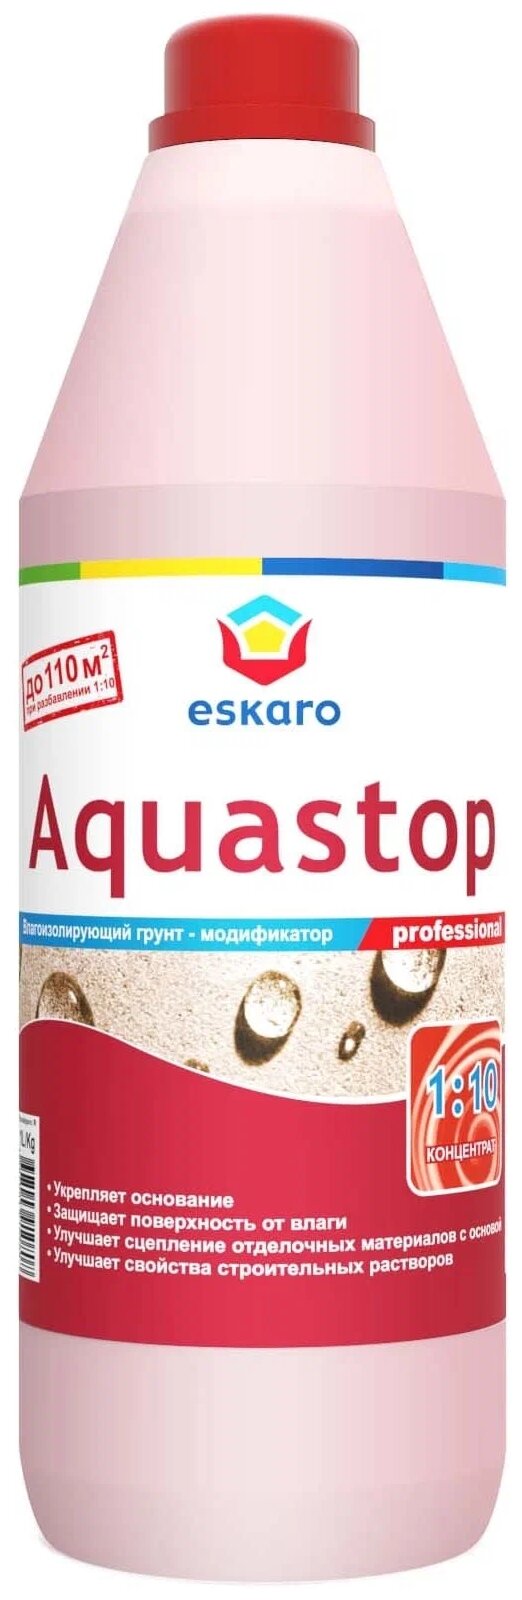 Грунт Eskaro Aquastop Professional концентрат 1 л